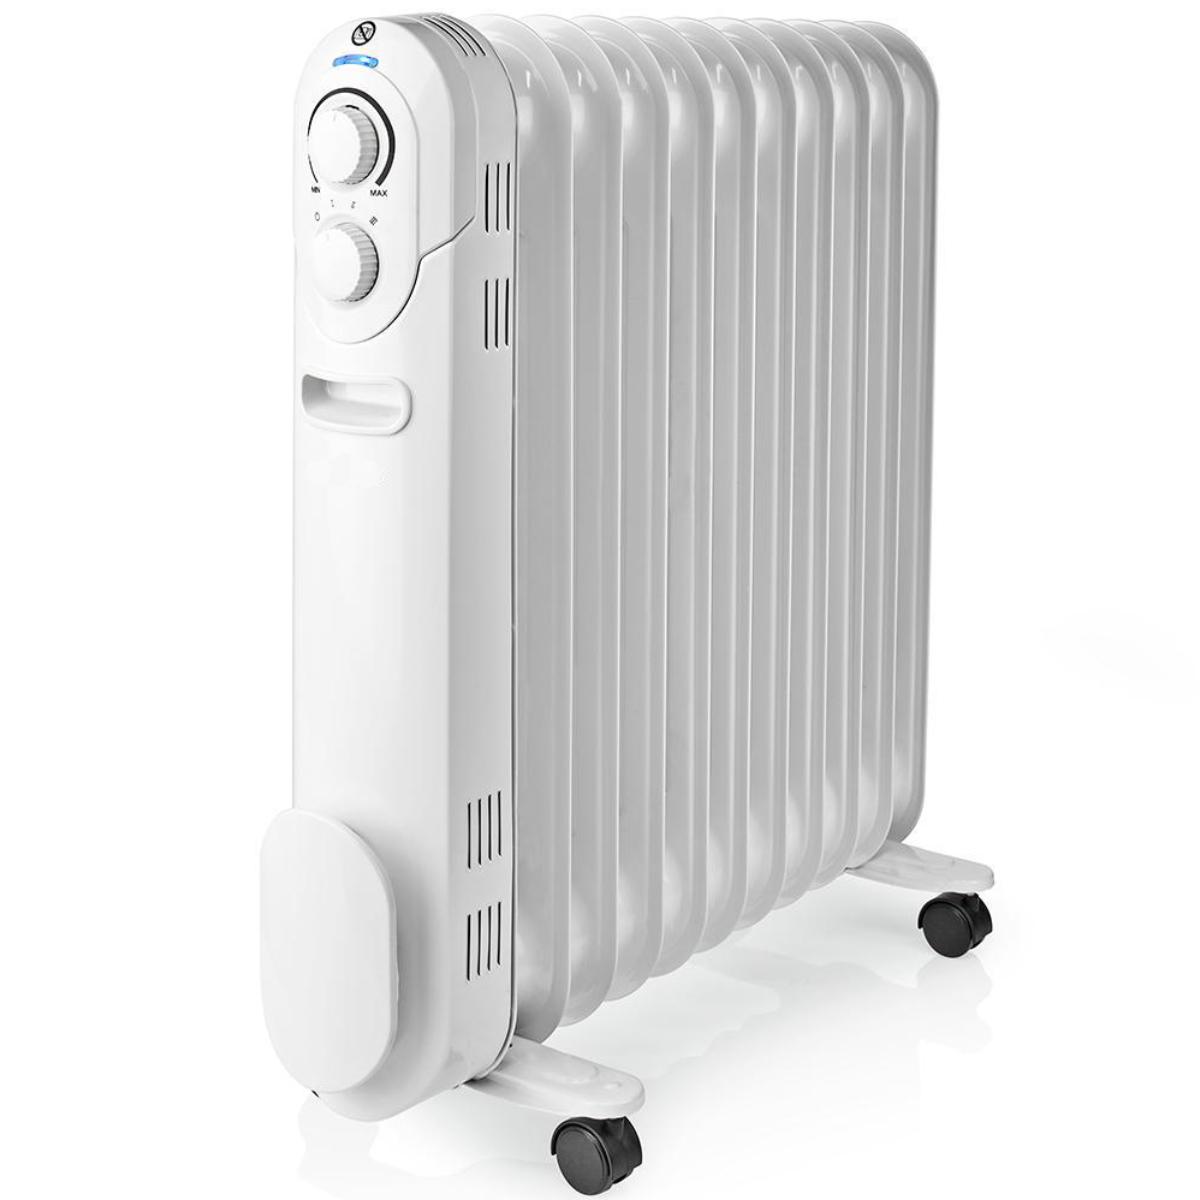 Elektrische verwarming - Oliegevulde radiator die aanvullende en comfortabele vormt die zowel stil als is. De radiator is voorzien van drie warmtestanden en een thermostaat om de gewenste